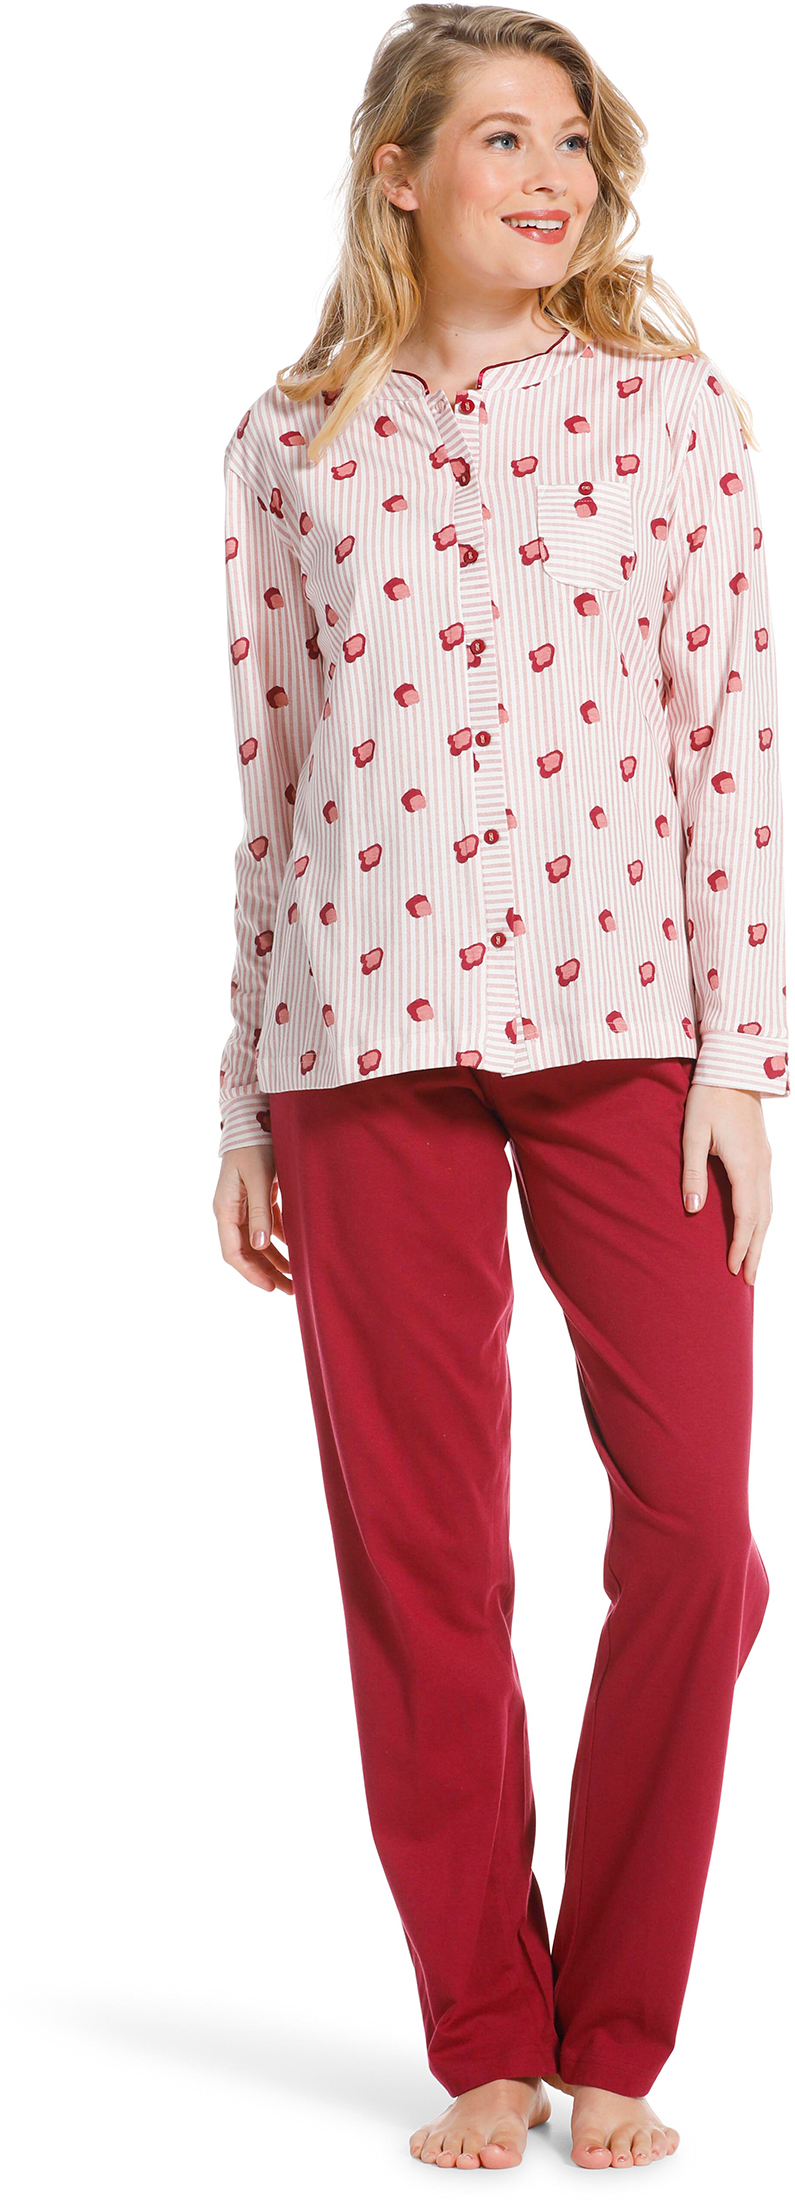 Pastunette doorknoop dames pyjama 20222-104-6 - Rose - 48